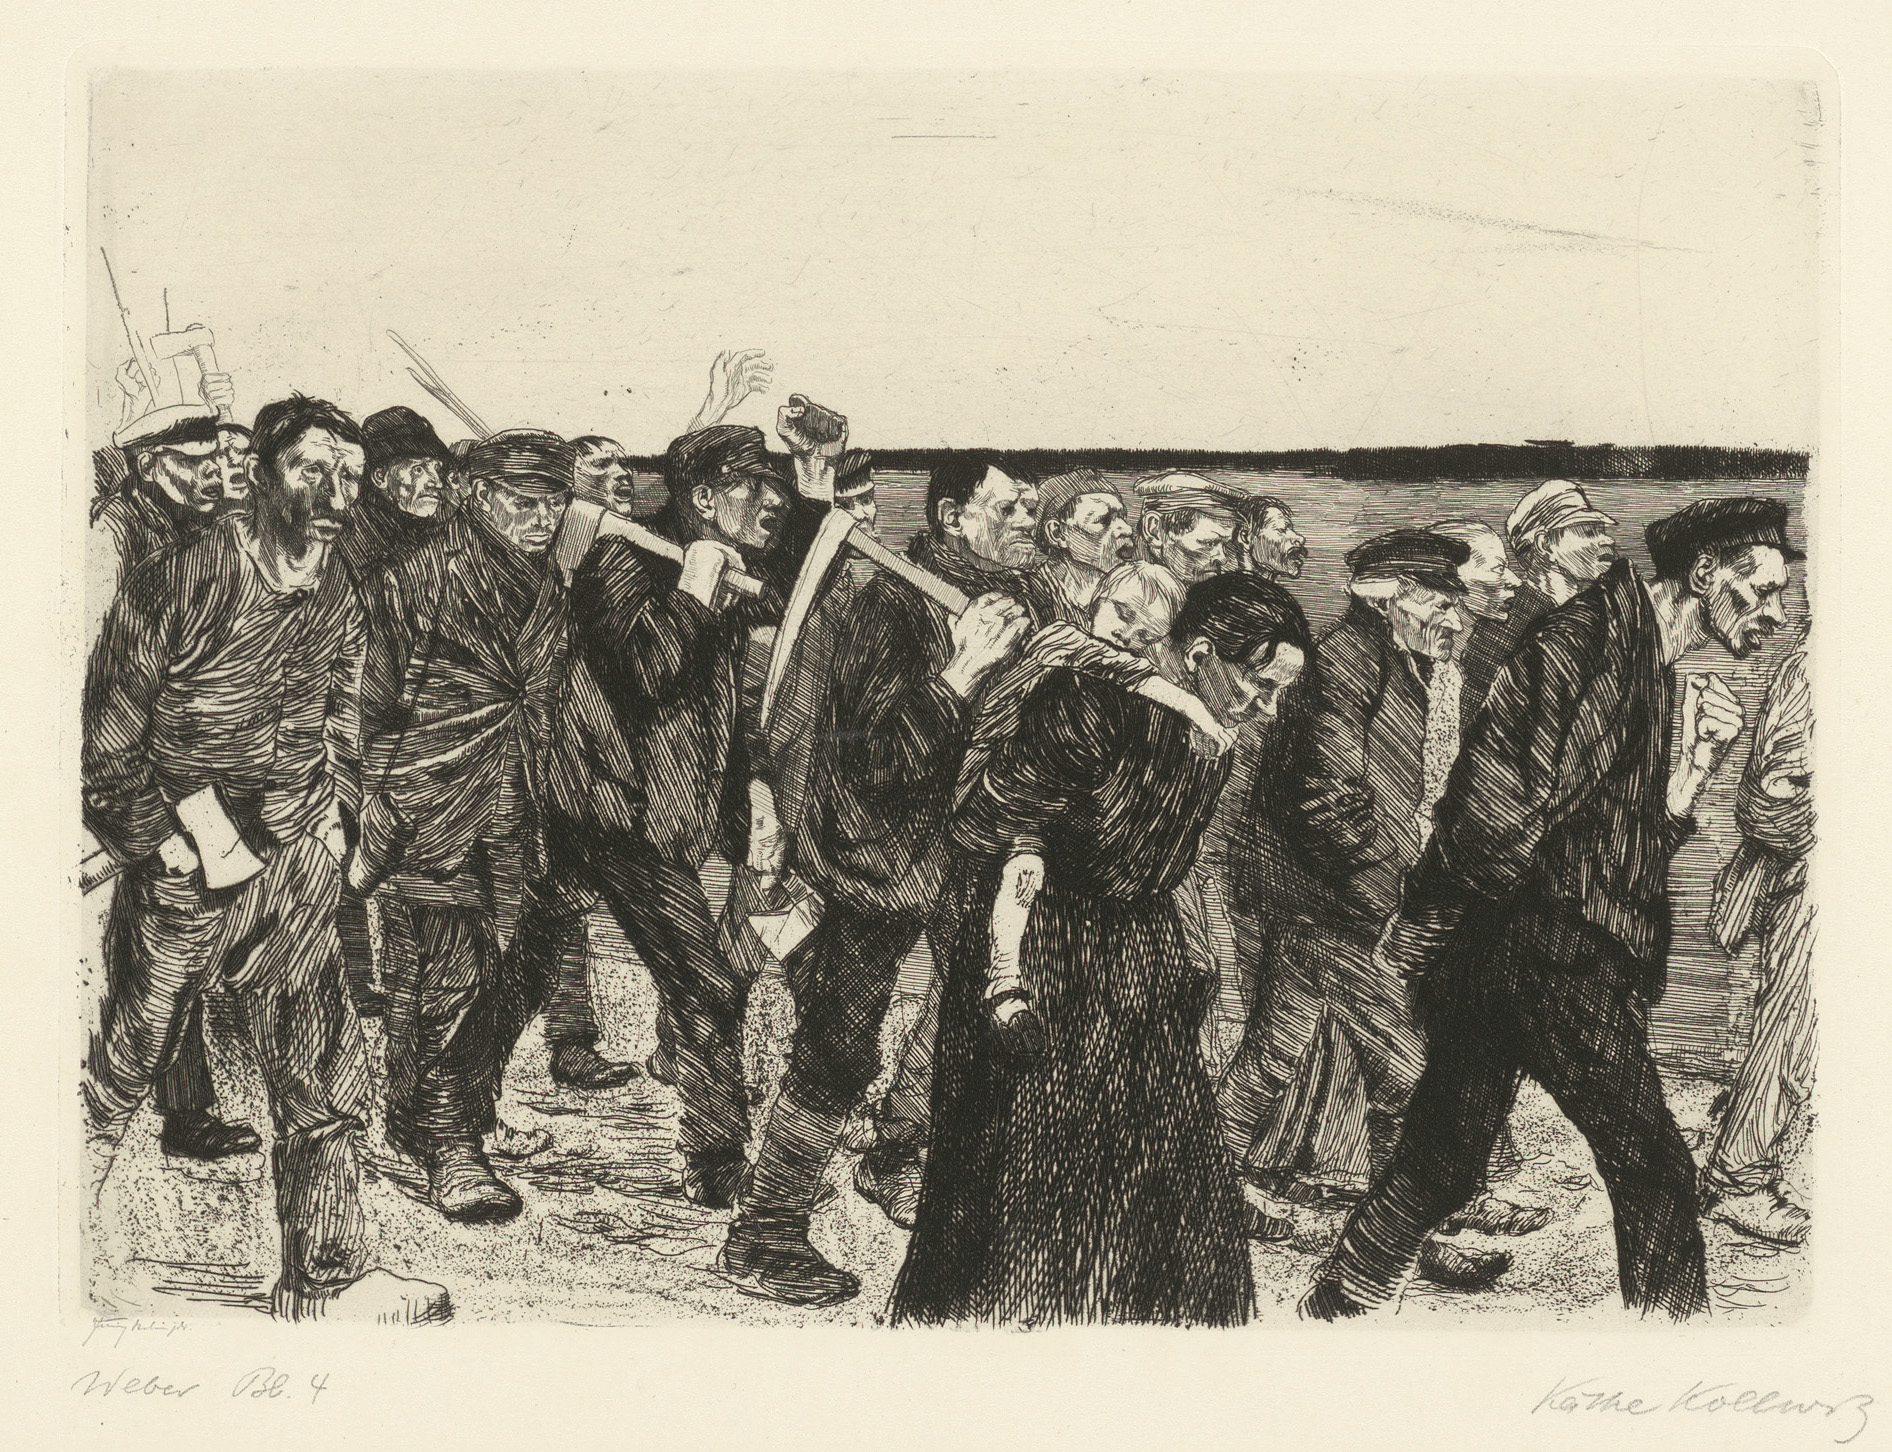 Käthe Kollwitz, Marche des tisserands, planche 4 du cycle »Une Révolte des tisserands«, 1893-97, eau-forte, émeri, Kn 36 II a